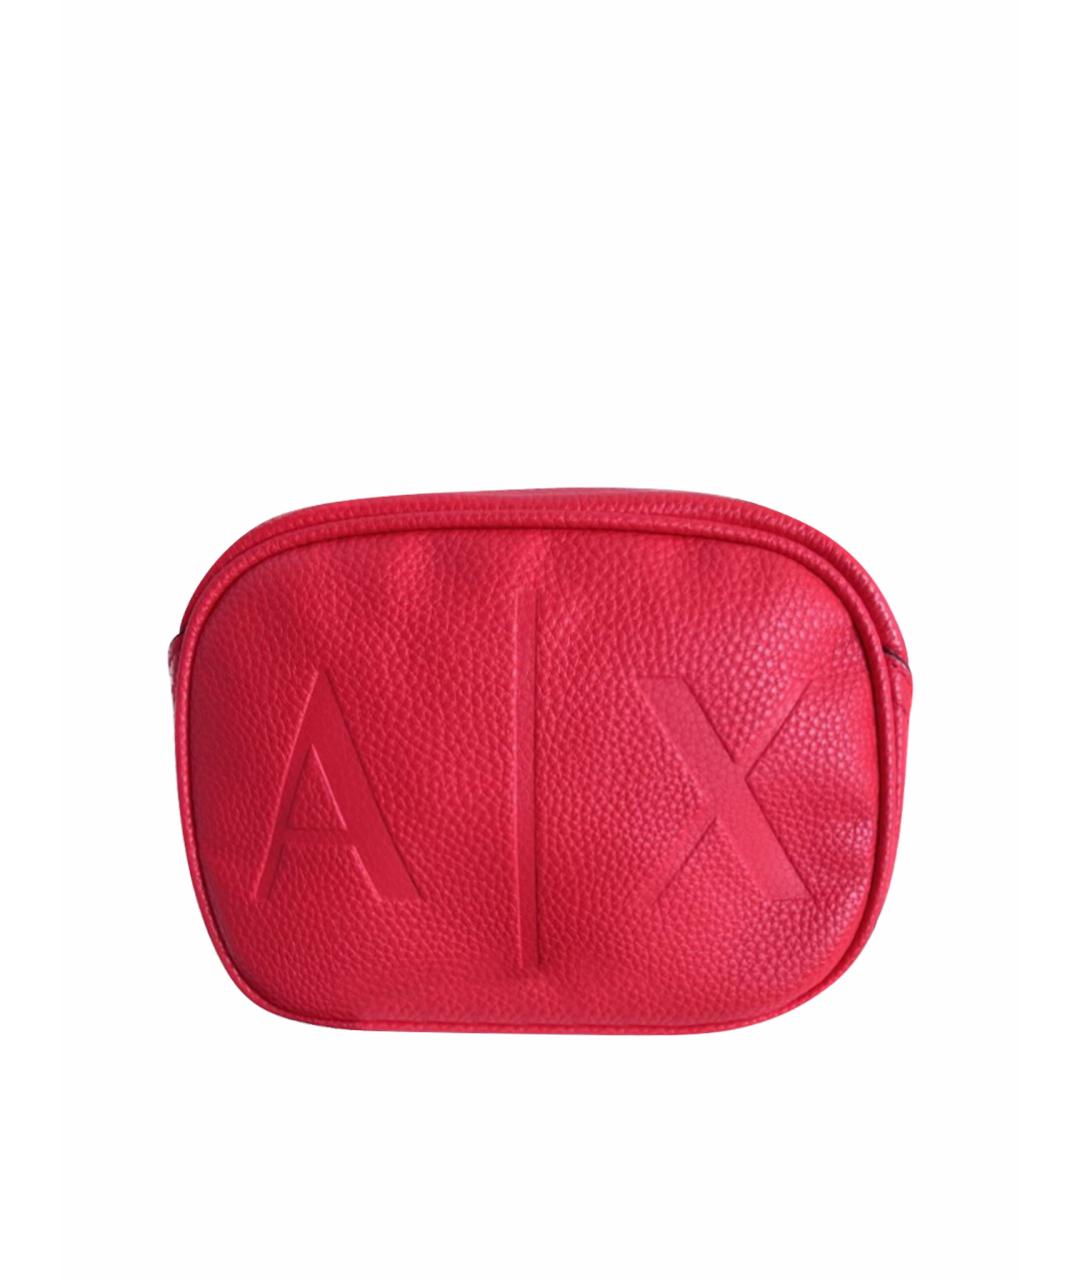 ARMANI EXCHANGE Красная сумка через плечо из искусственной кожи, фото 1